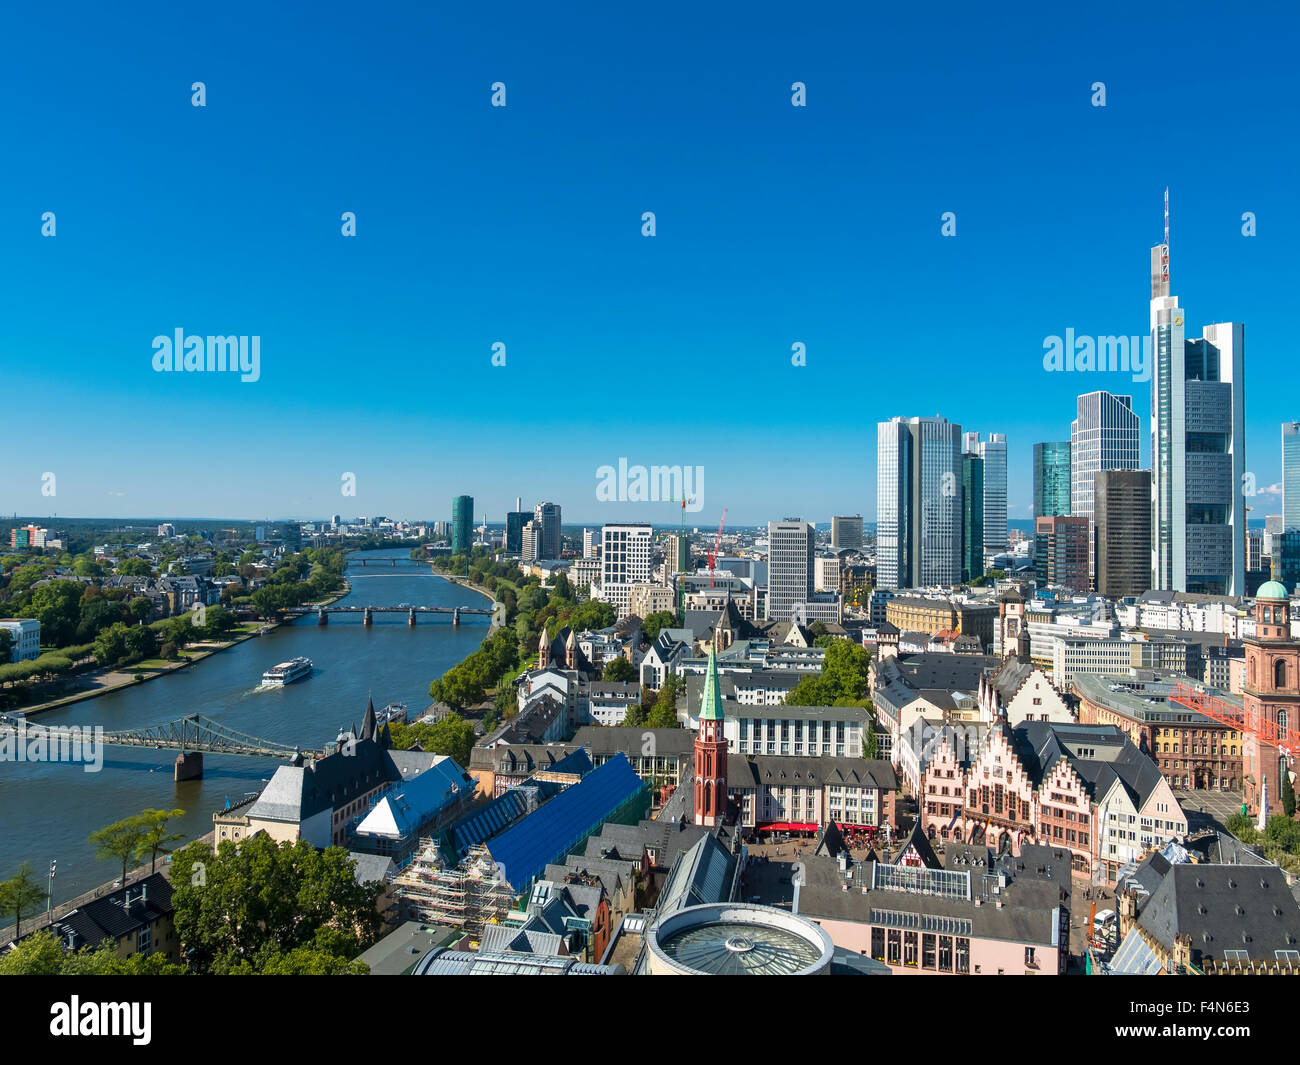 Allemagne, Hesse, Francfort sur Main, vue sur la ville avec financial district skyline Banque D'Images